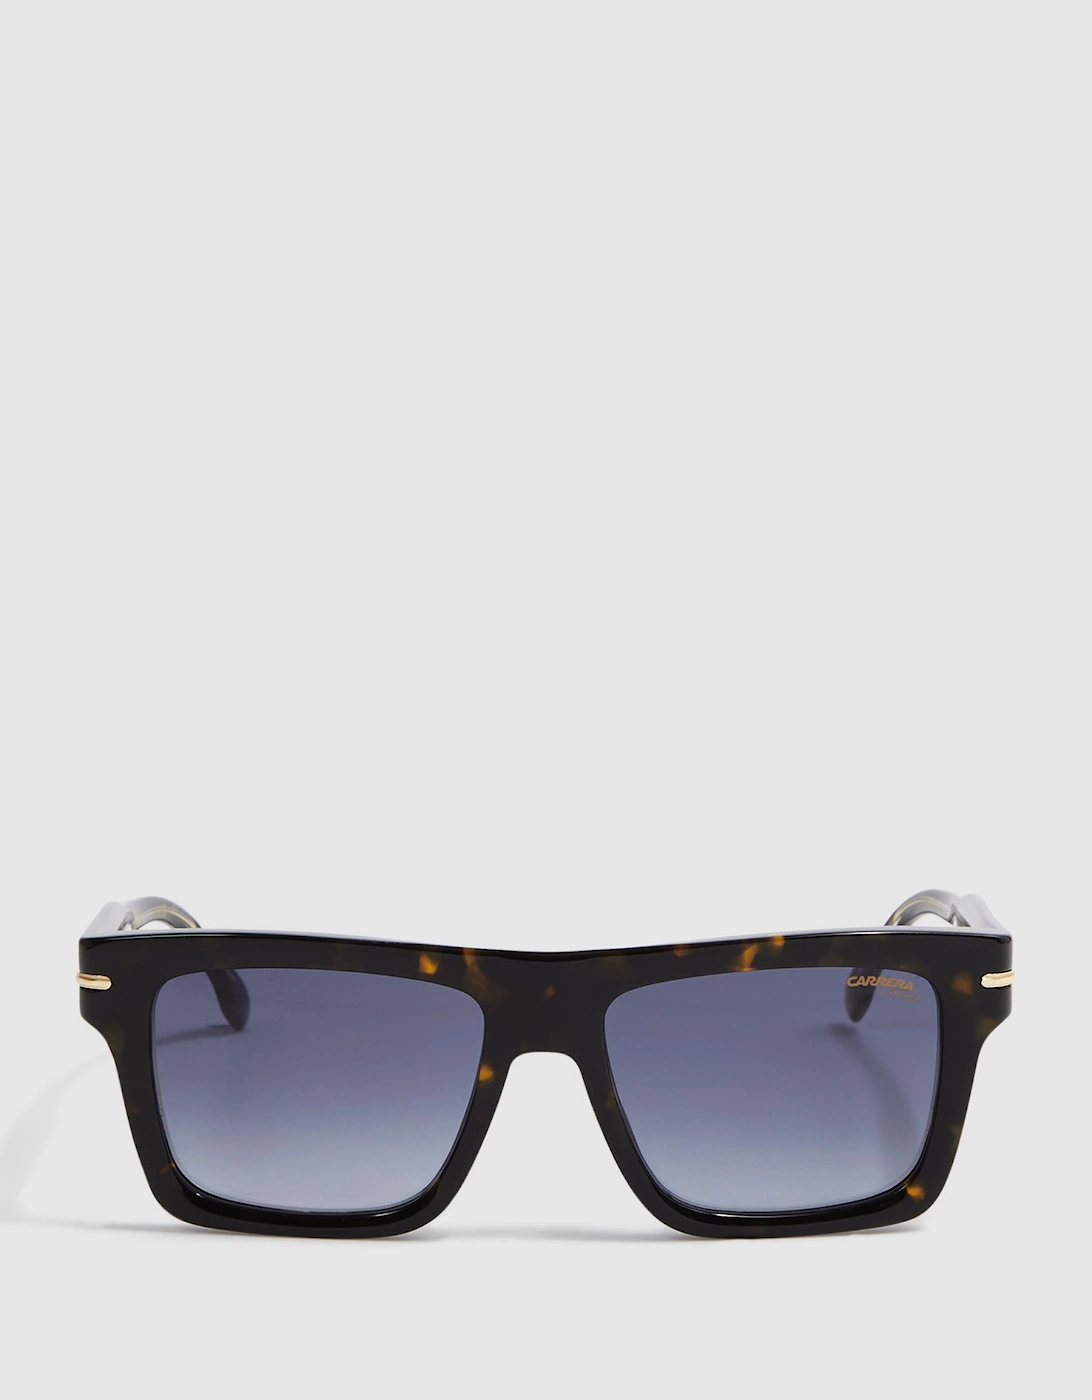 Carrera Eyewear Rectangular Tortoiseshell Sunglasses, 2 of 1